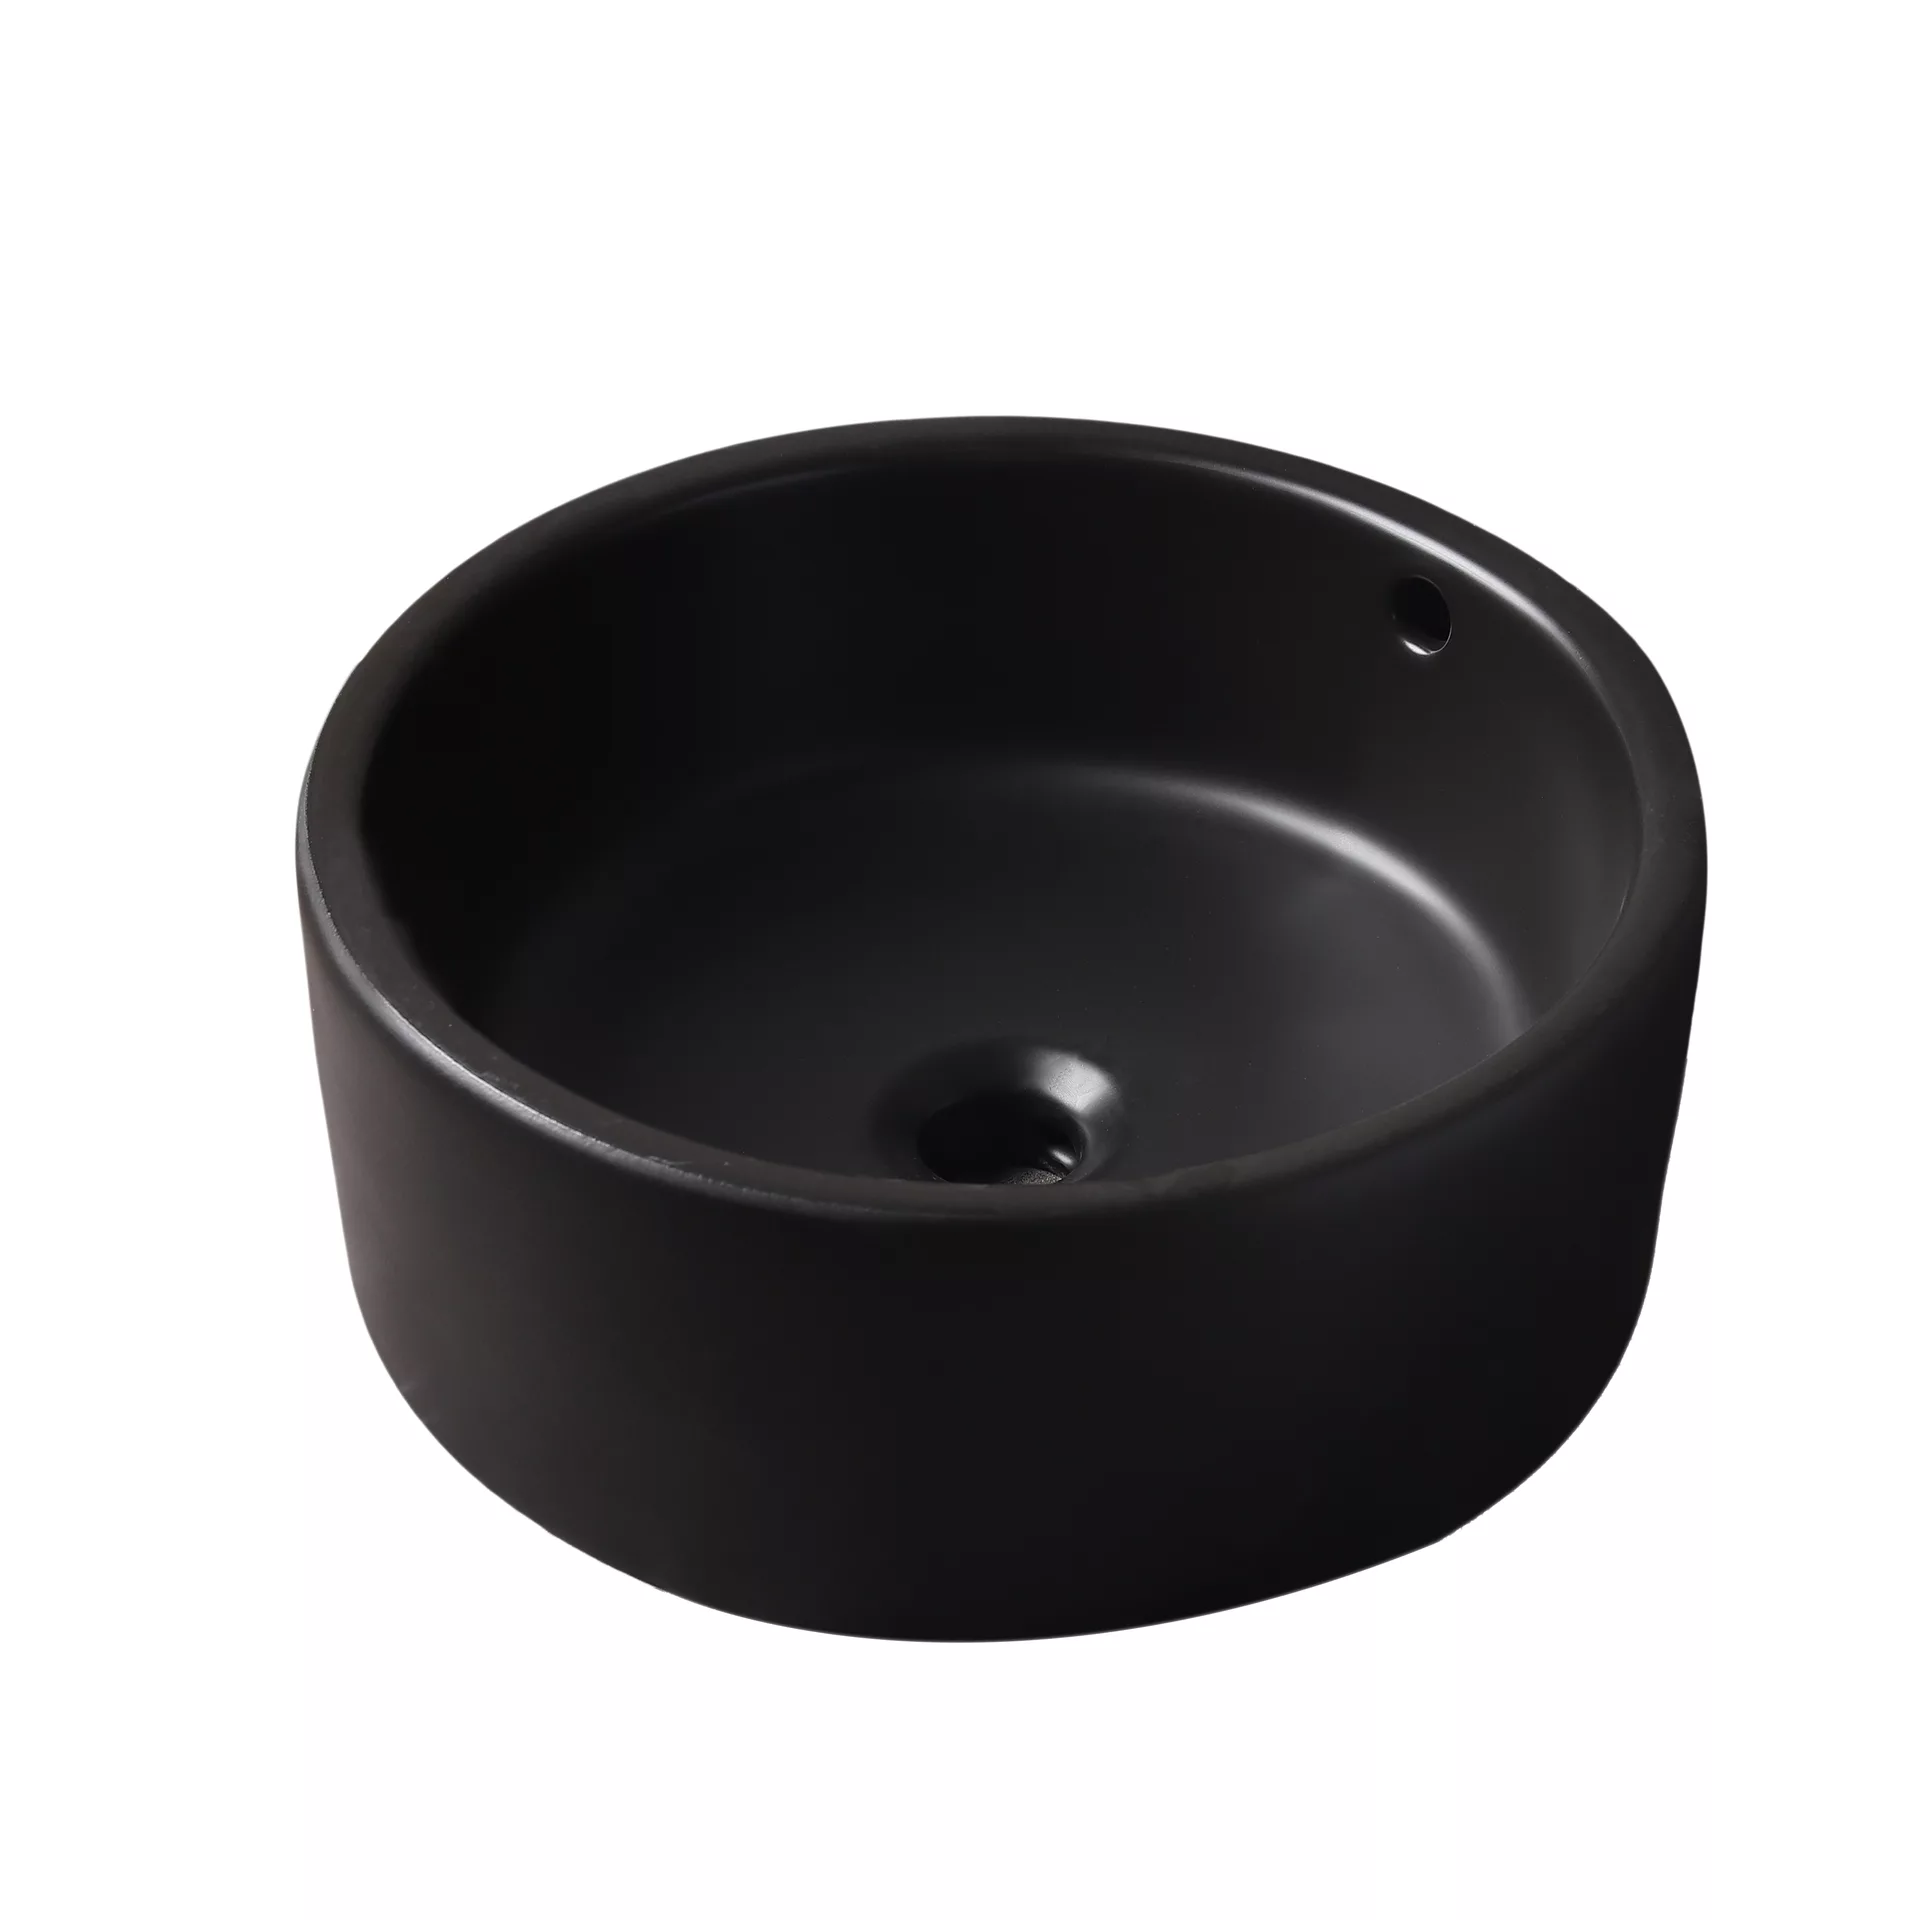 Накладная черная раковина для ванной GiD N9130bg керамическая